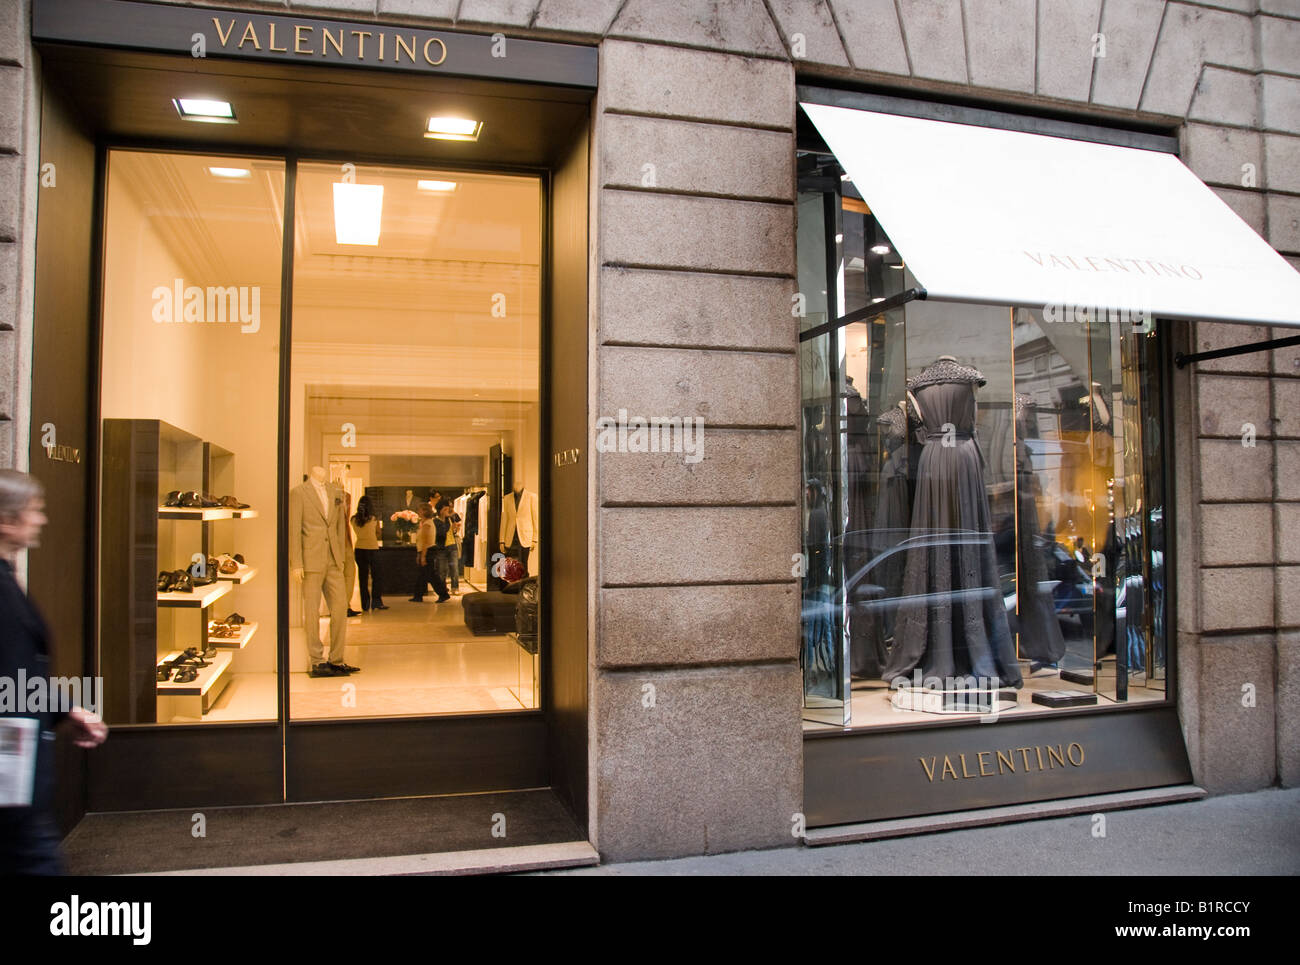 VALENTINO - 10 Photos - Via Montenapoleone 20, Milano, Italy